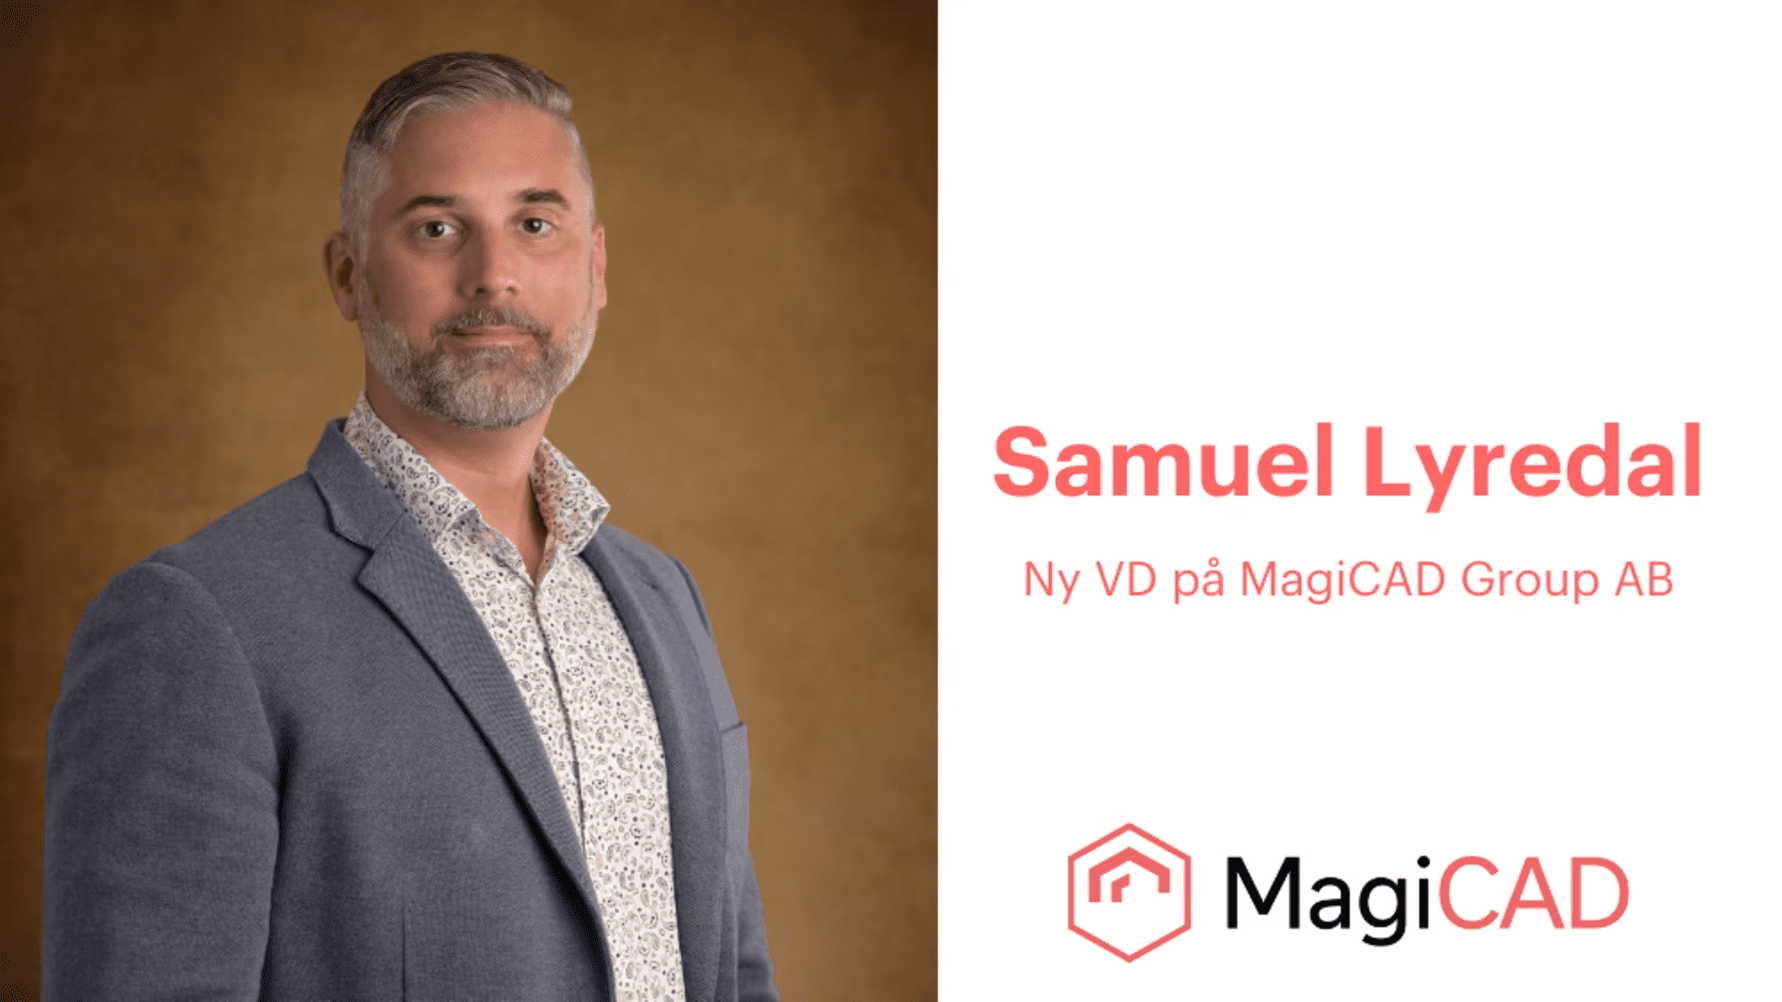 Samuel Lyredal som ny VD för MagiCAD Group AB